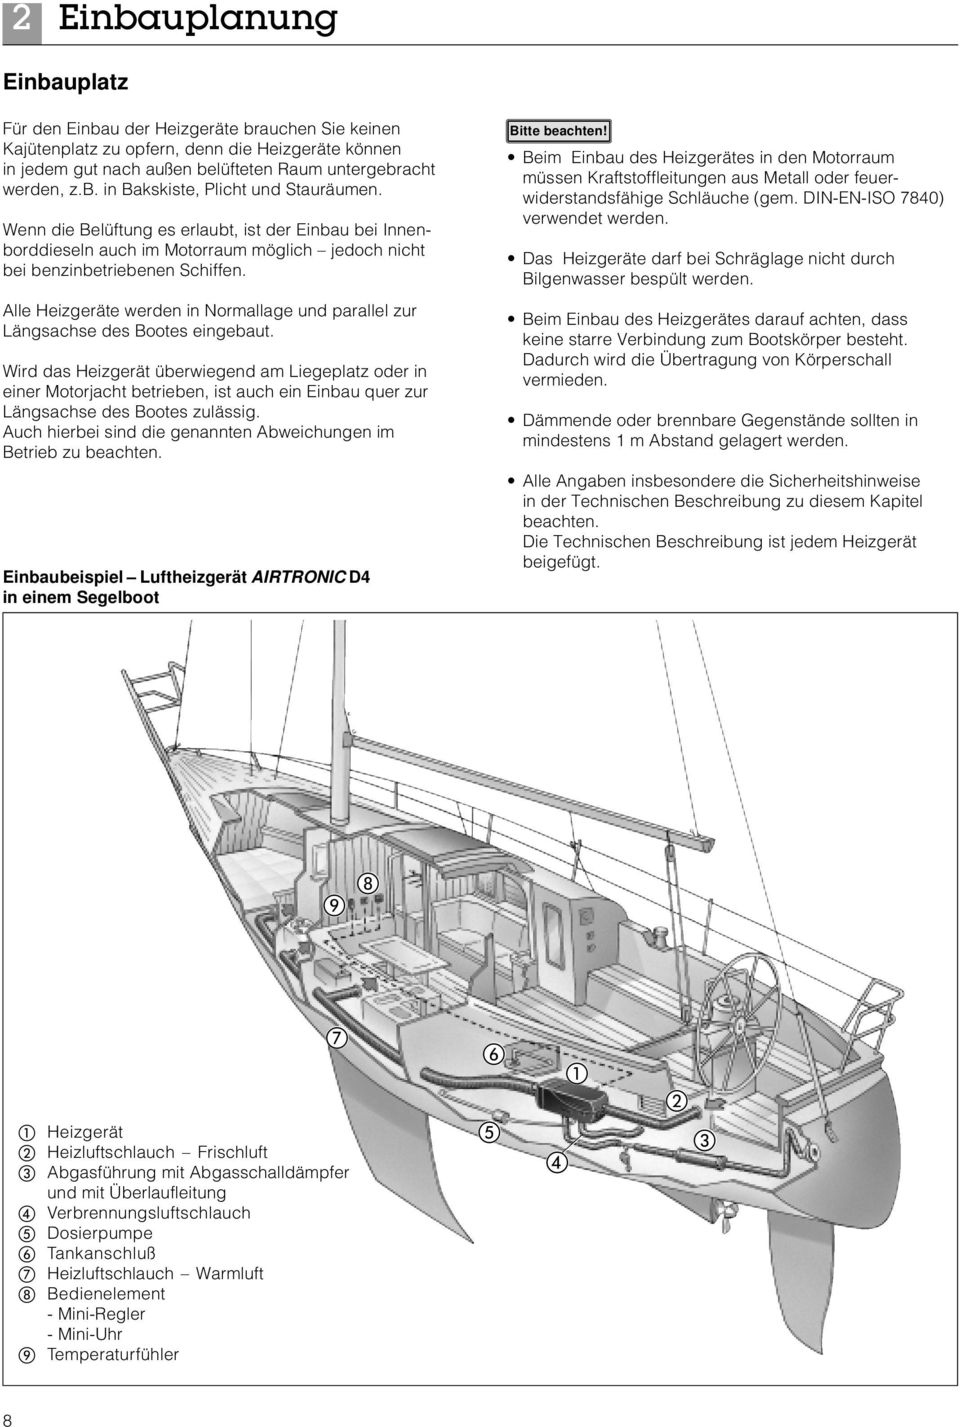 Alle Heizgeräte werden in Normallage und parallel zur Längsachse des Bootes eingebaut.